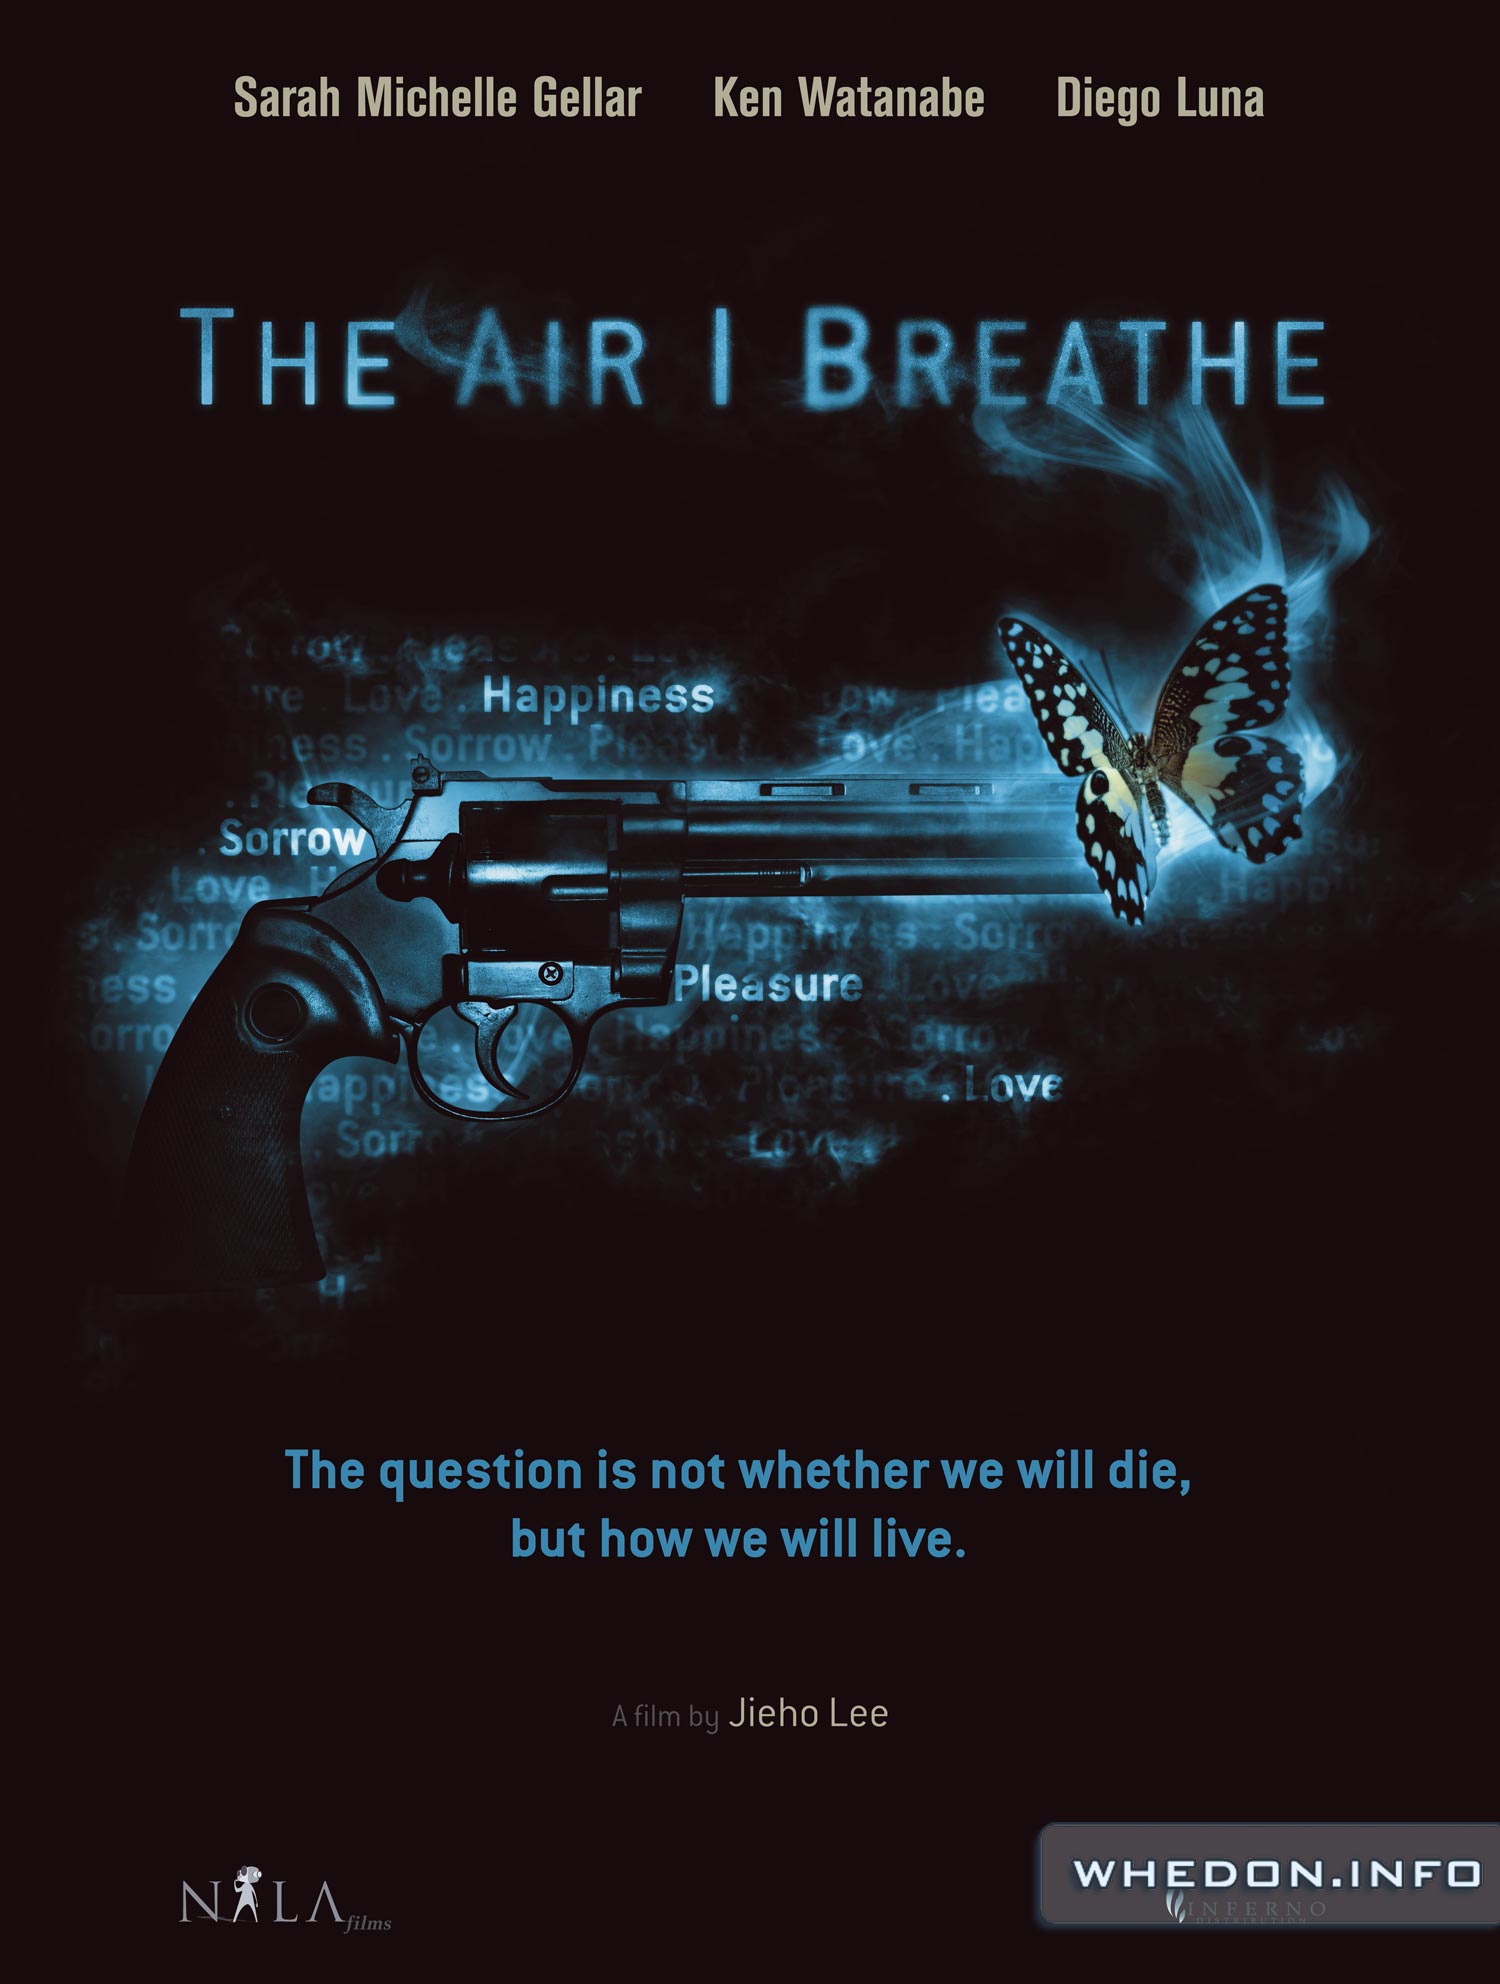 sarah-michelle-gellar-the-air-i-breathe-movie-poster-hq-1500.jpg